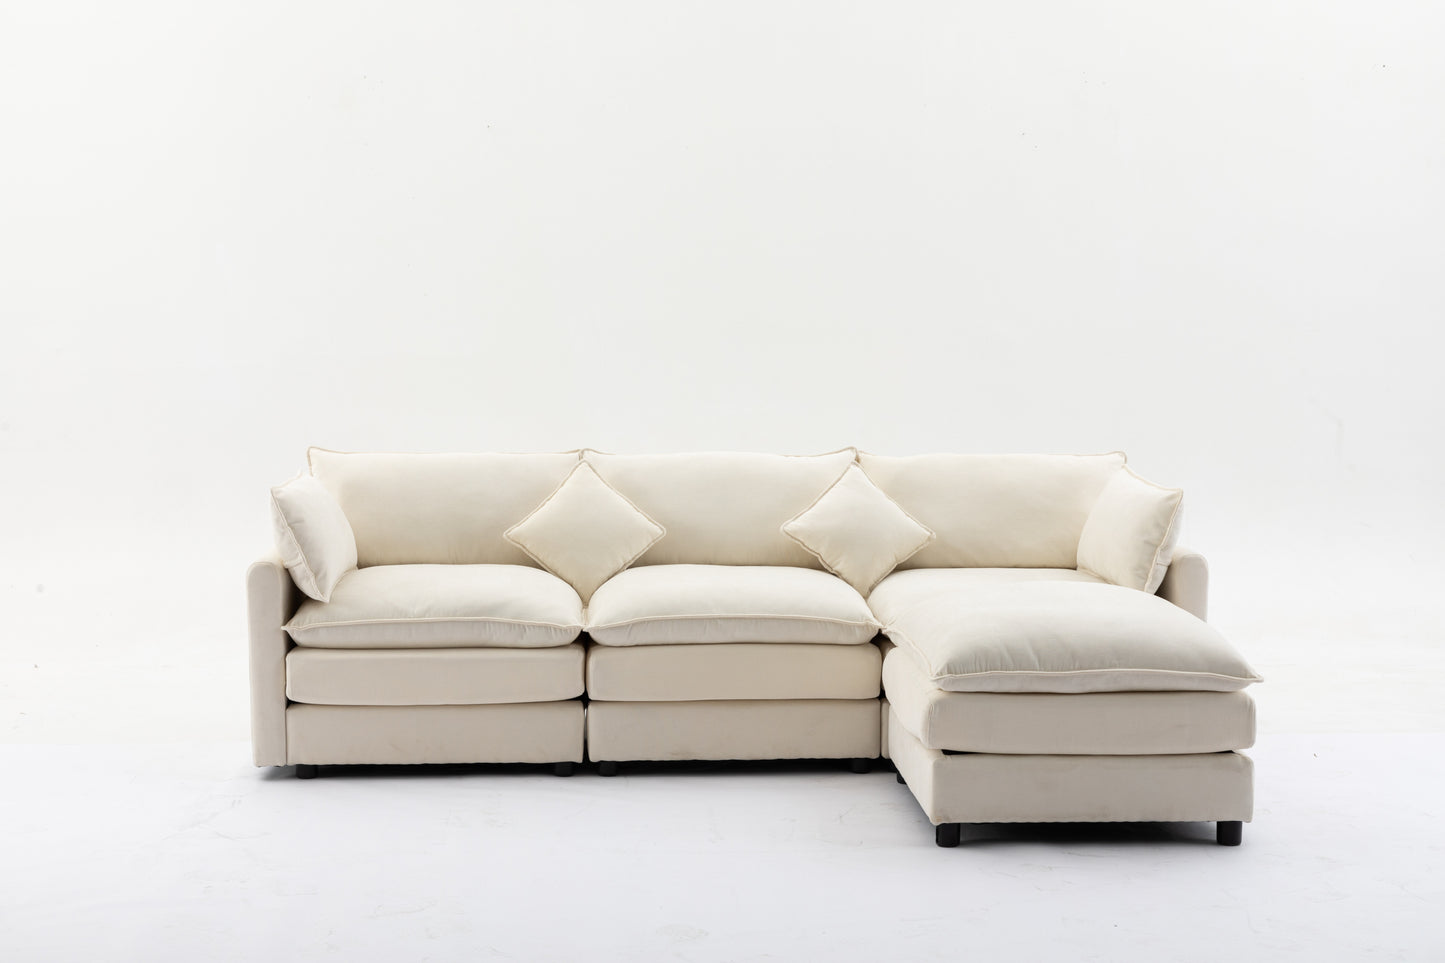 Modular Sectional Sofa, 100.39" x 34.65" 3-Seater Sofa